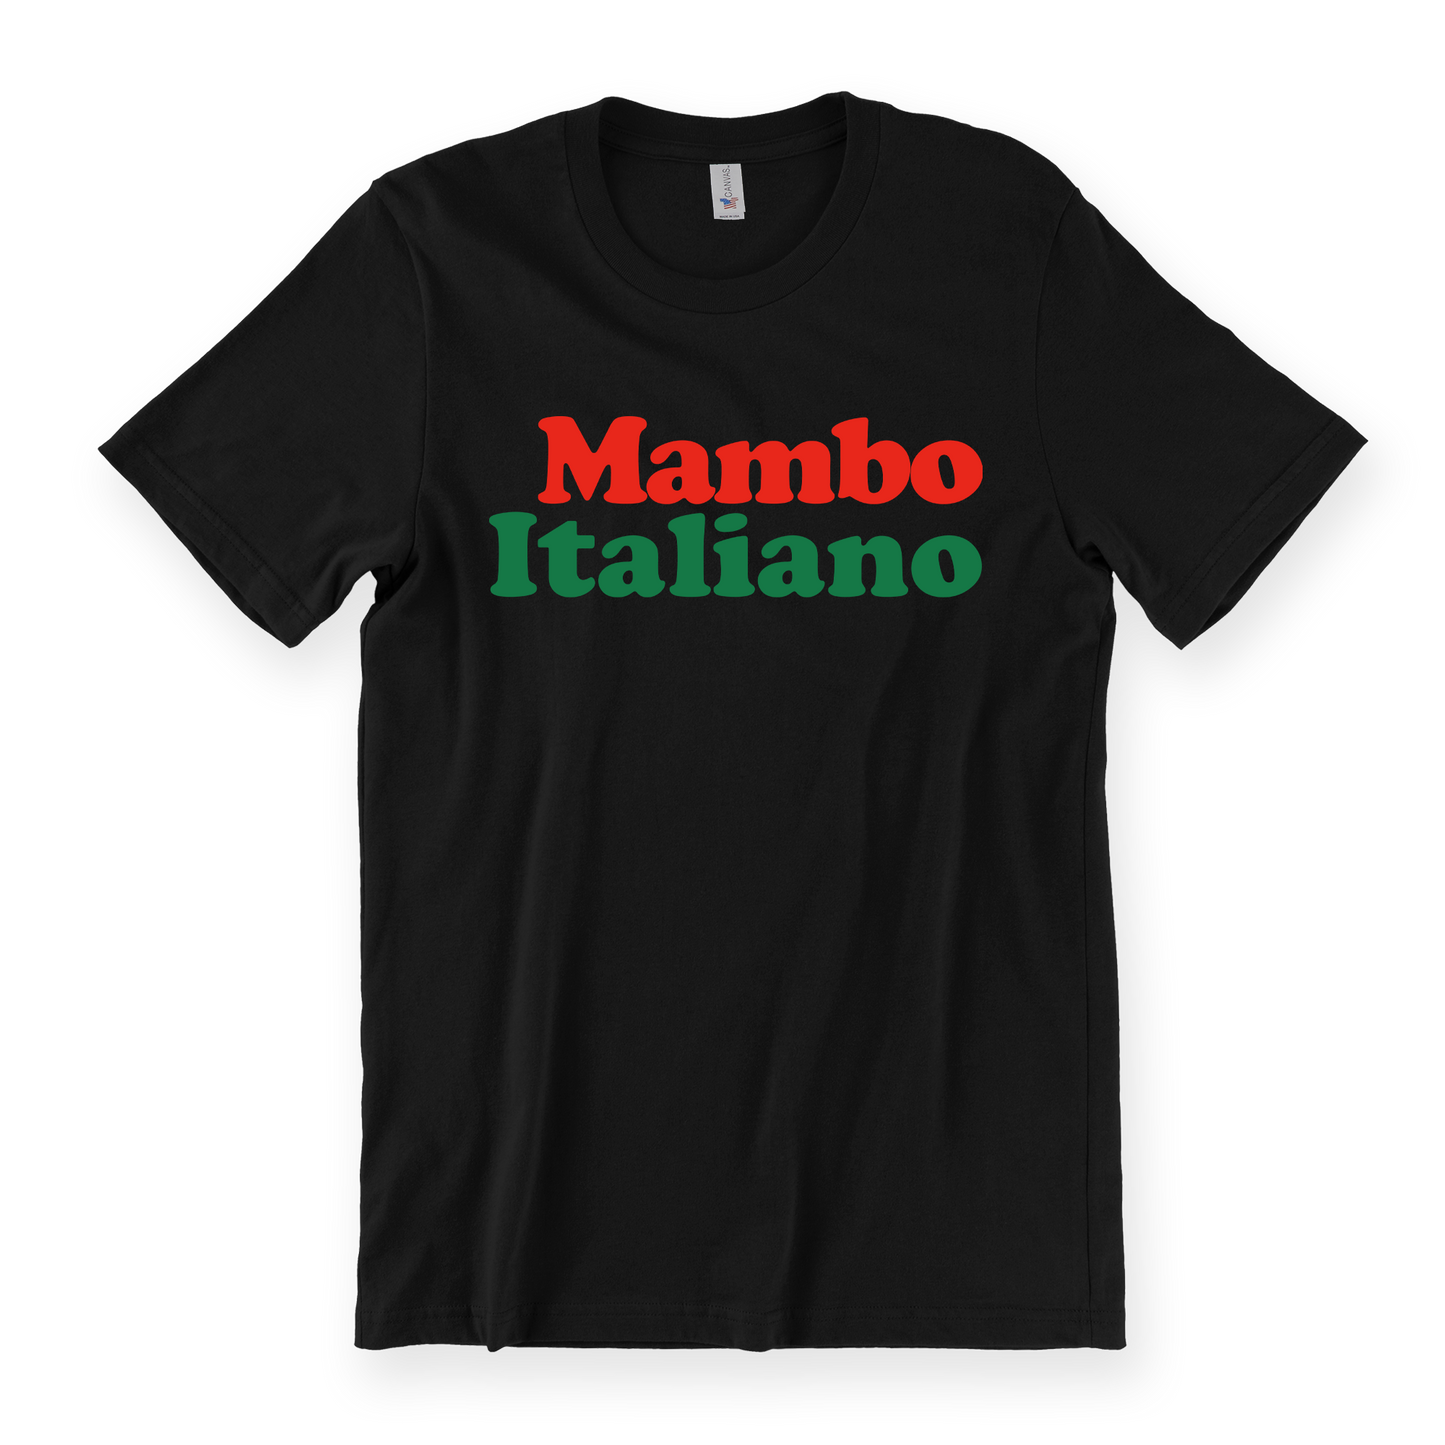 Mambo Italiano Tee - Black